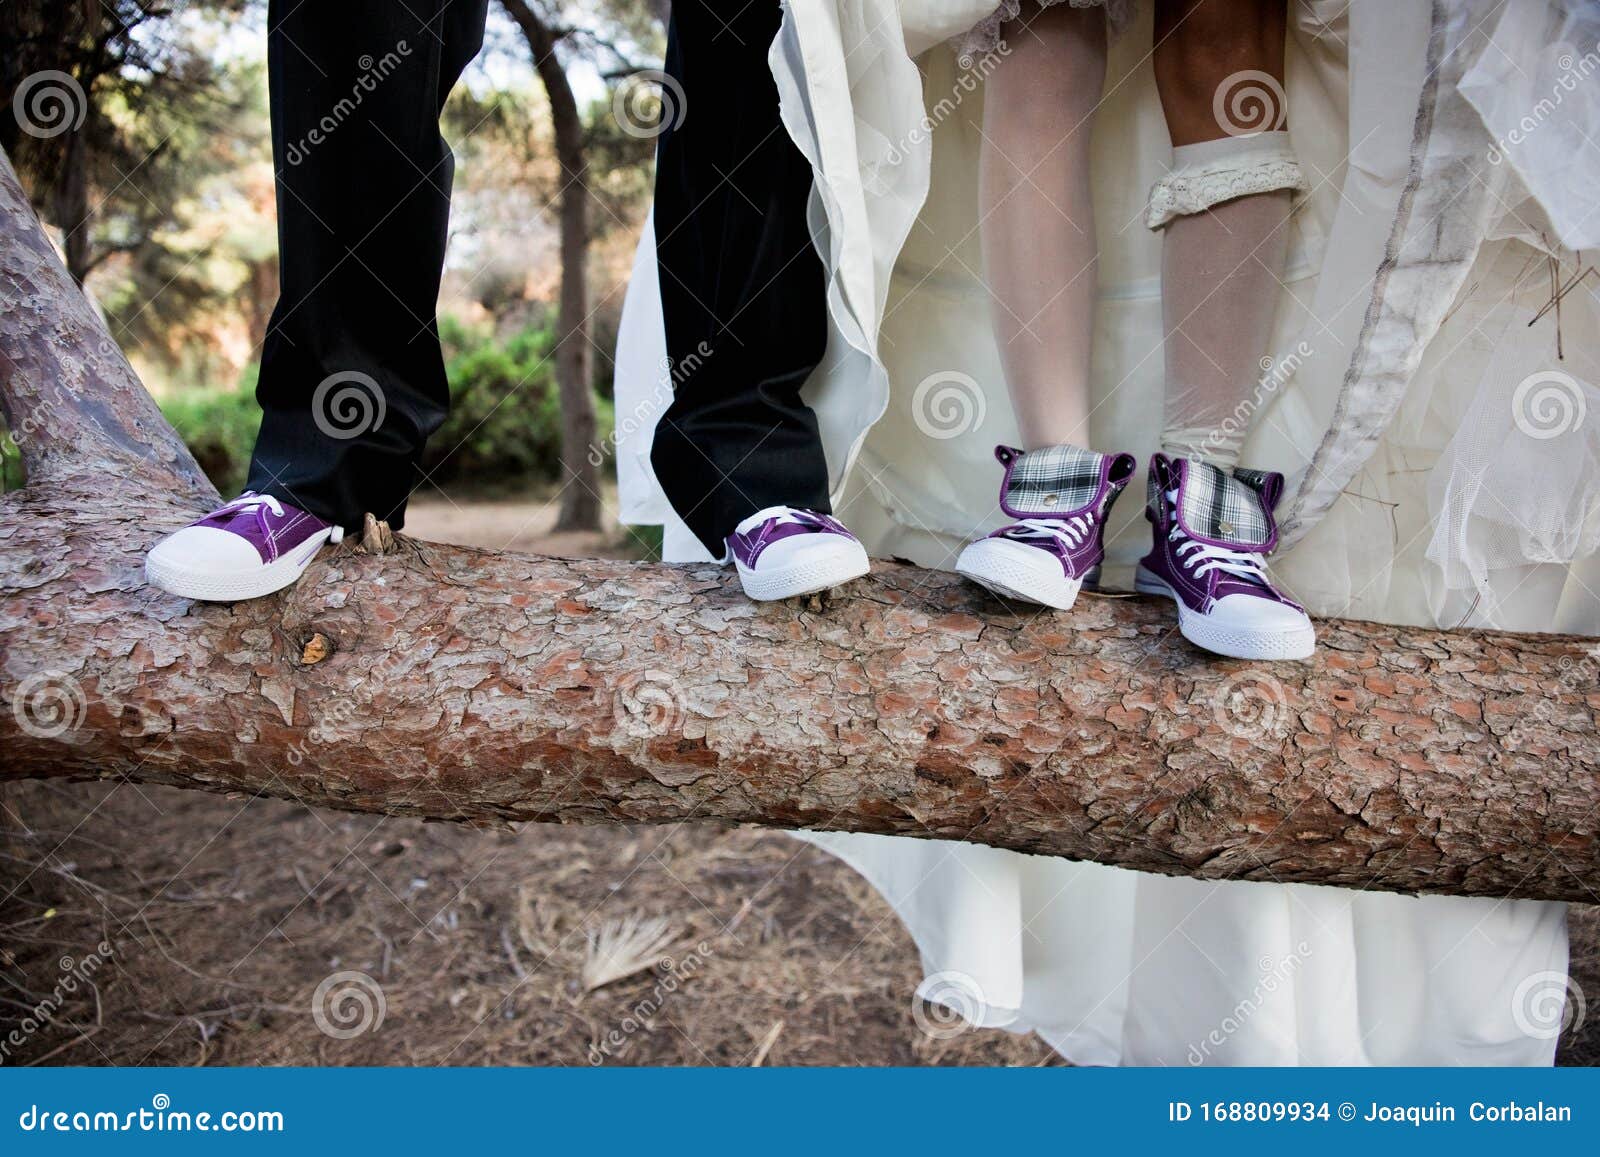 De Recién Casados Con Zapatillas De Graciosas E Foto de archivo - Imagen de dulzura, marido: